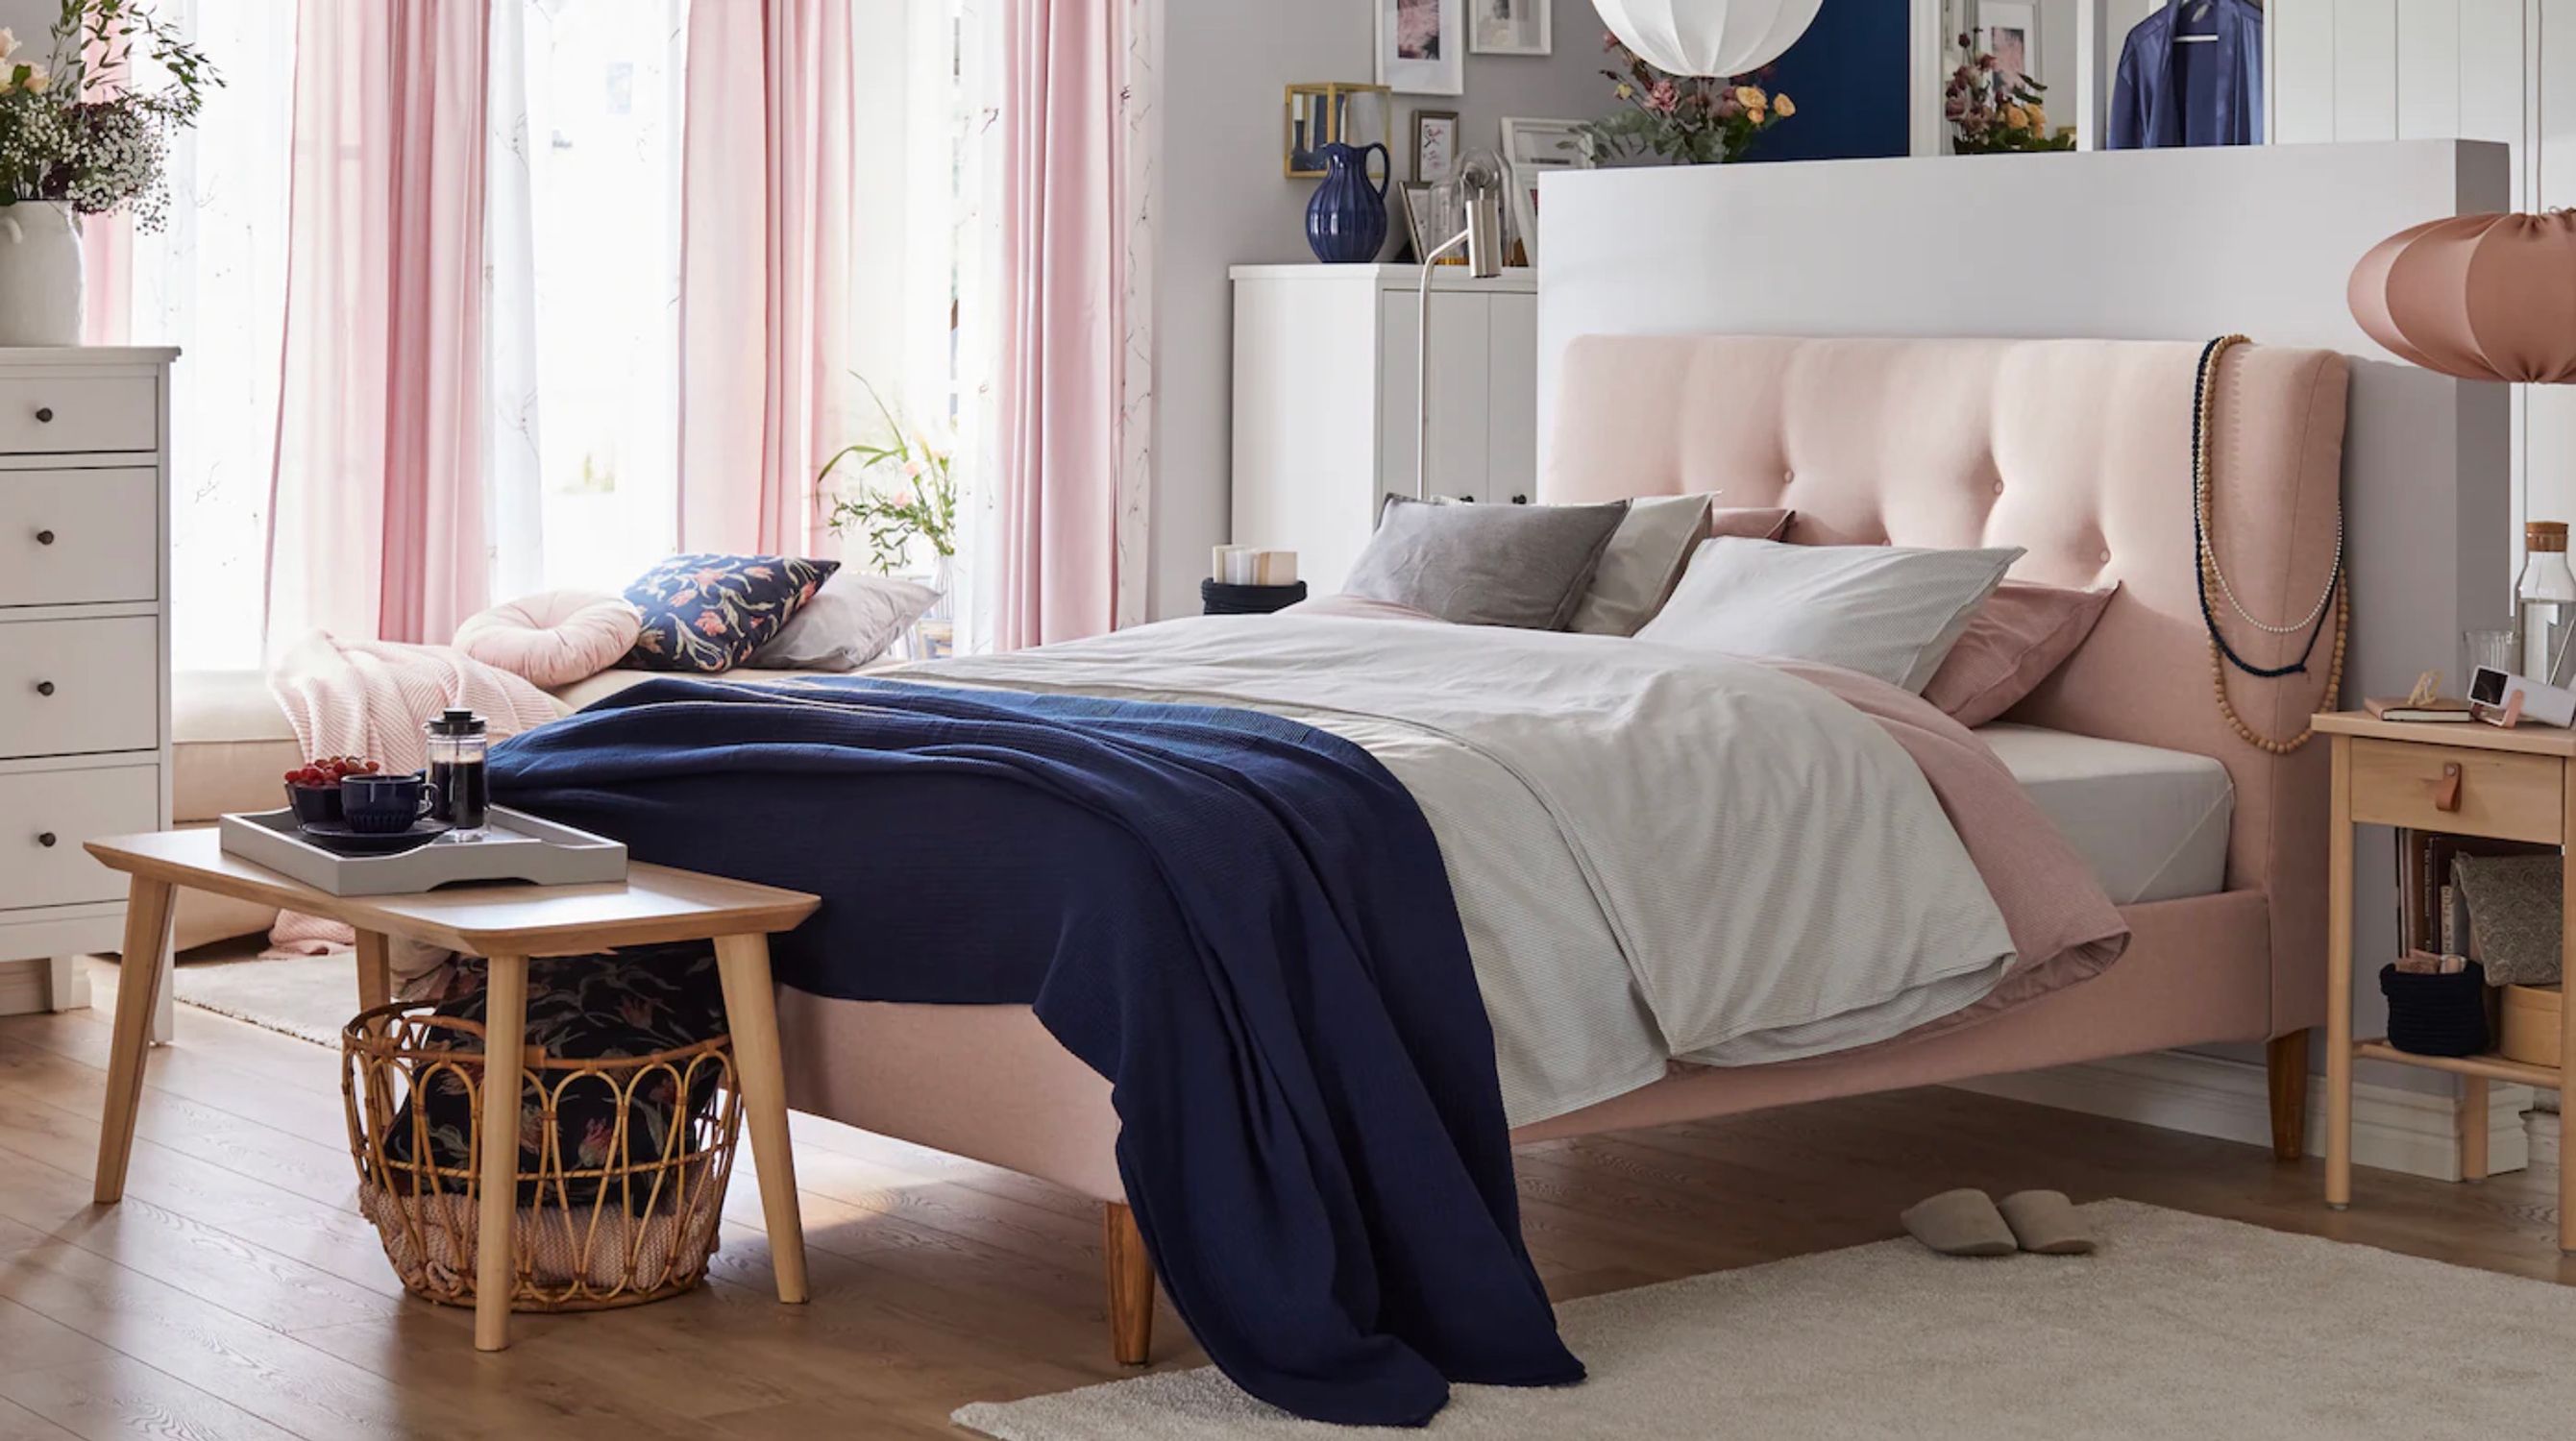 Camas económicas y de calidad para todo tipo de dormitorios - IKEA